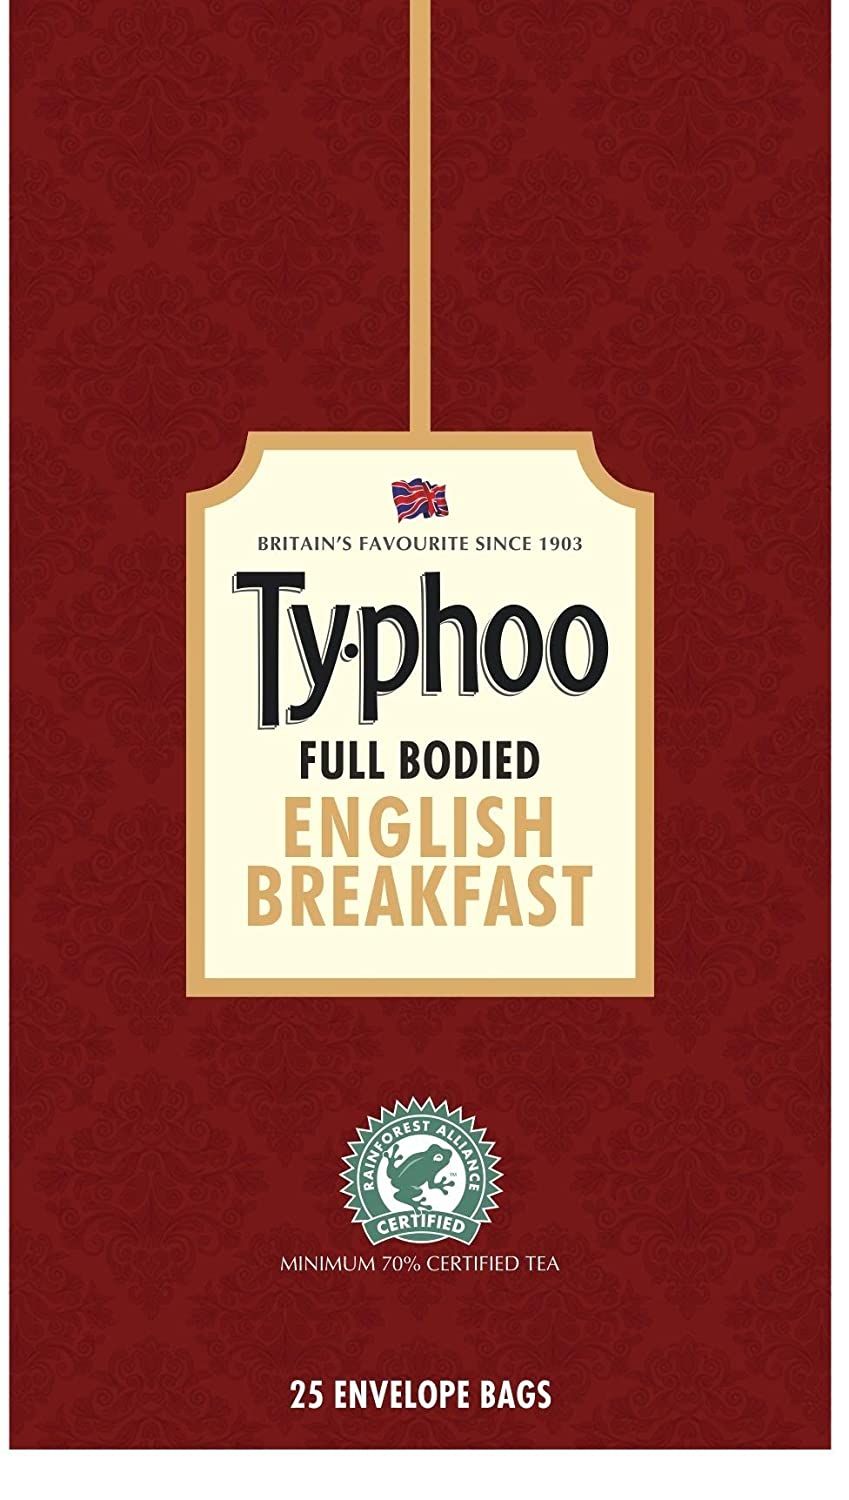 Typhoo Distinctive English Breakfast Black Tea Bags Image